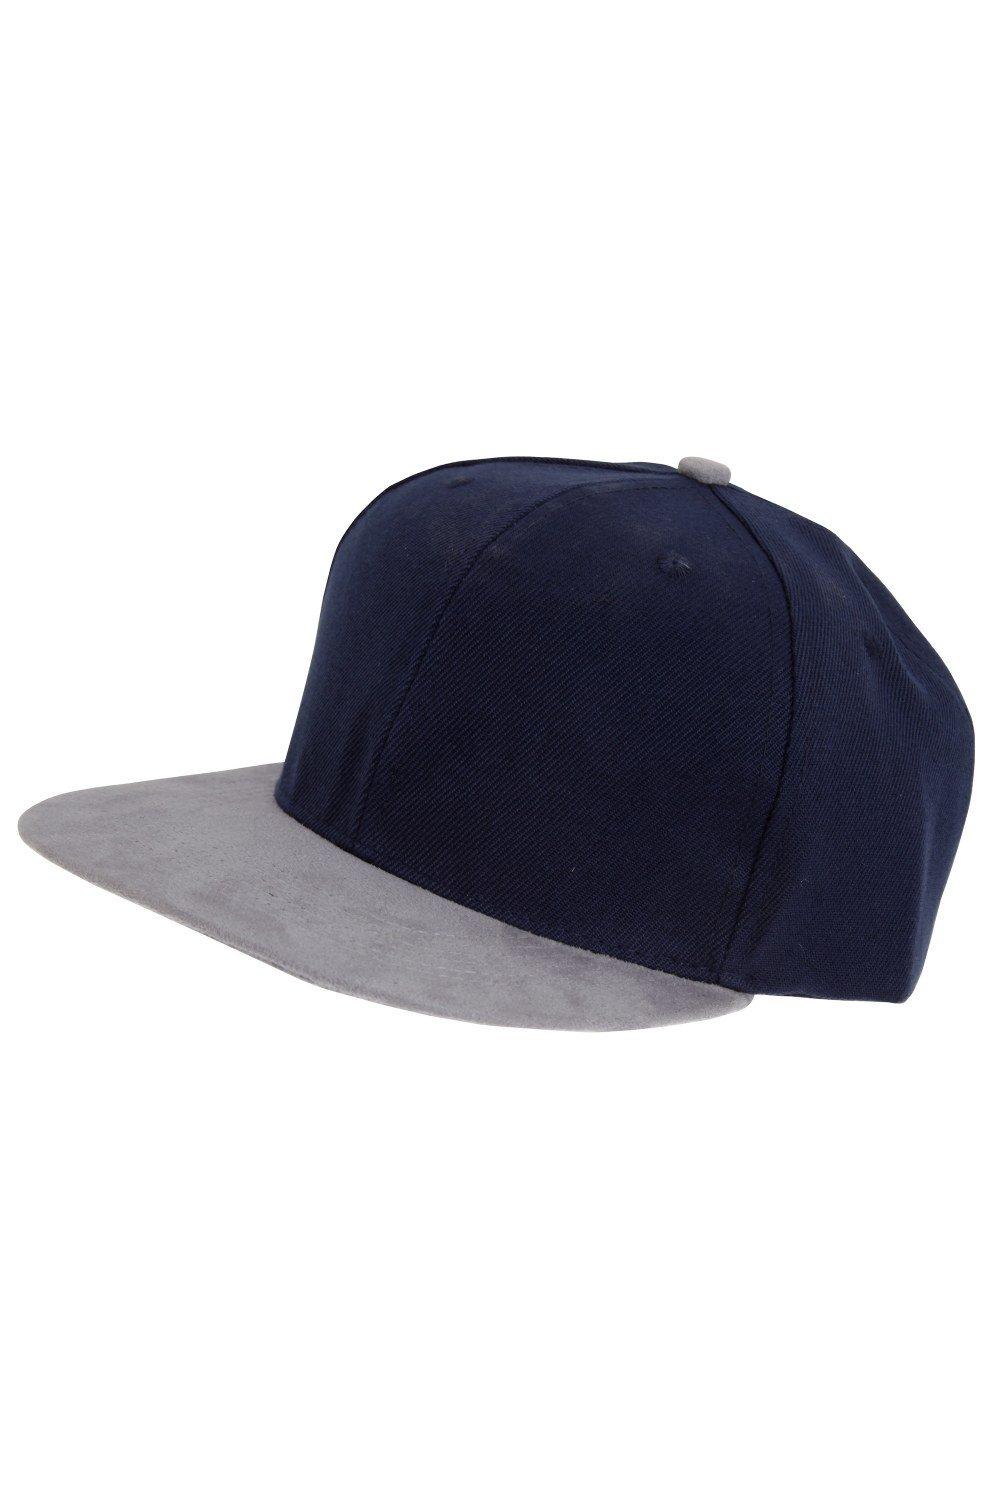 Бейсбольная кепка Snapback Tom Franks, темно-синий sleckton модная бейсбольная кепка для мужчин и женщин повседневная кепка в стиле хип хоп snapback летняя шляпа от солнца спортивные кожаные кепк